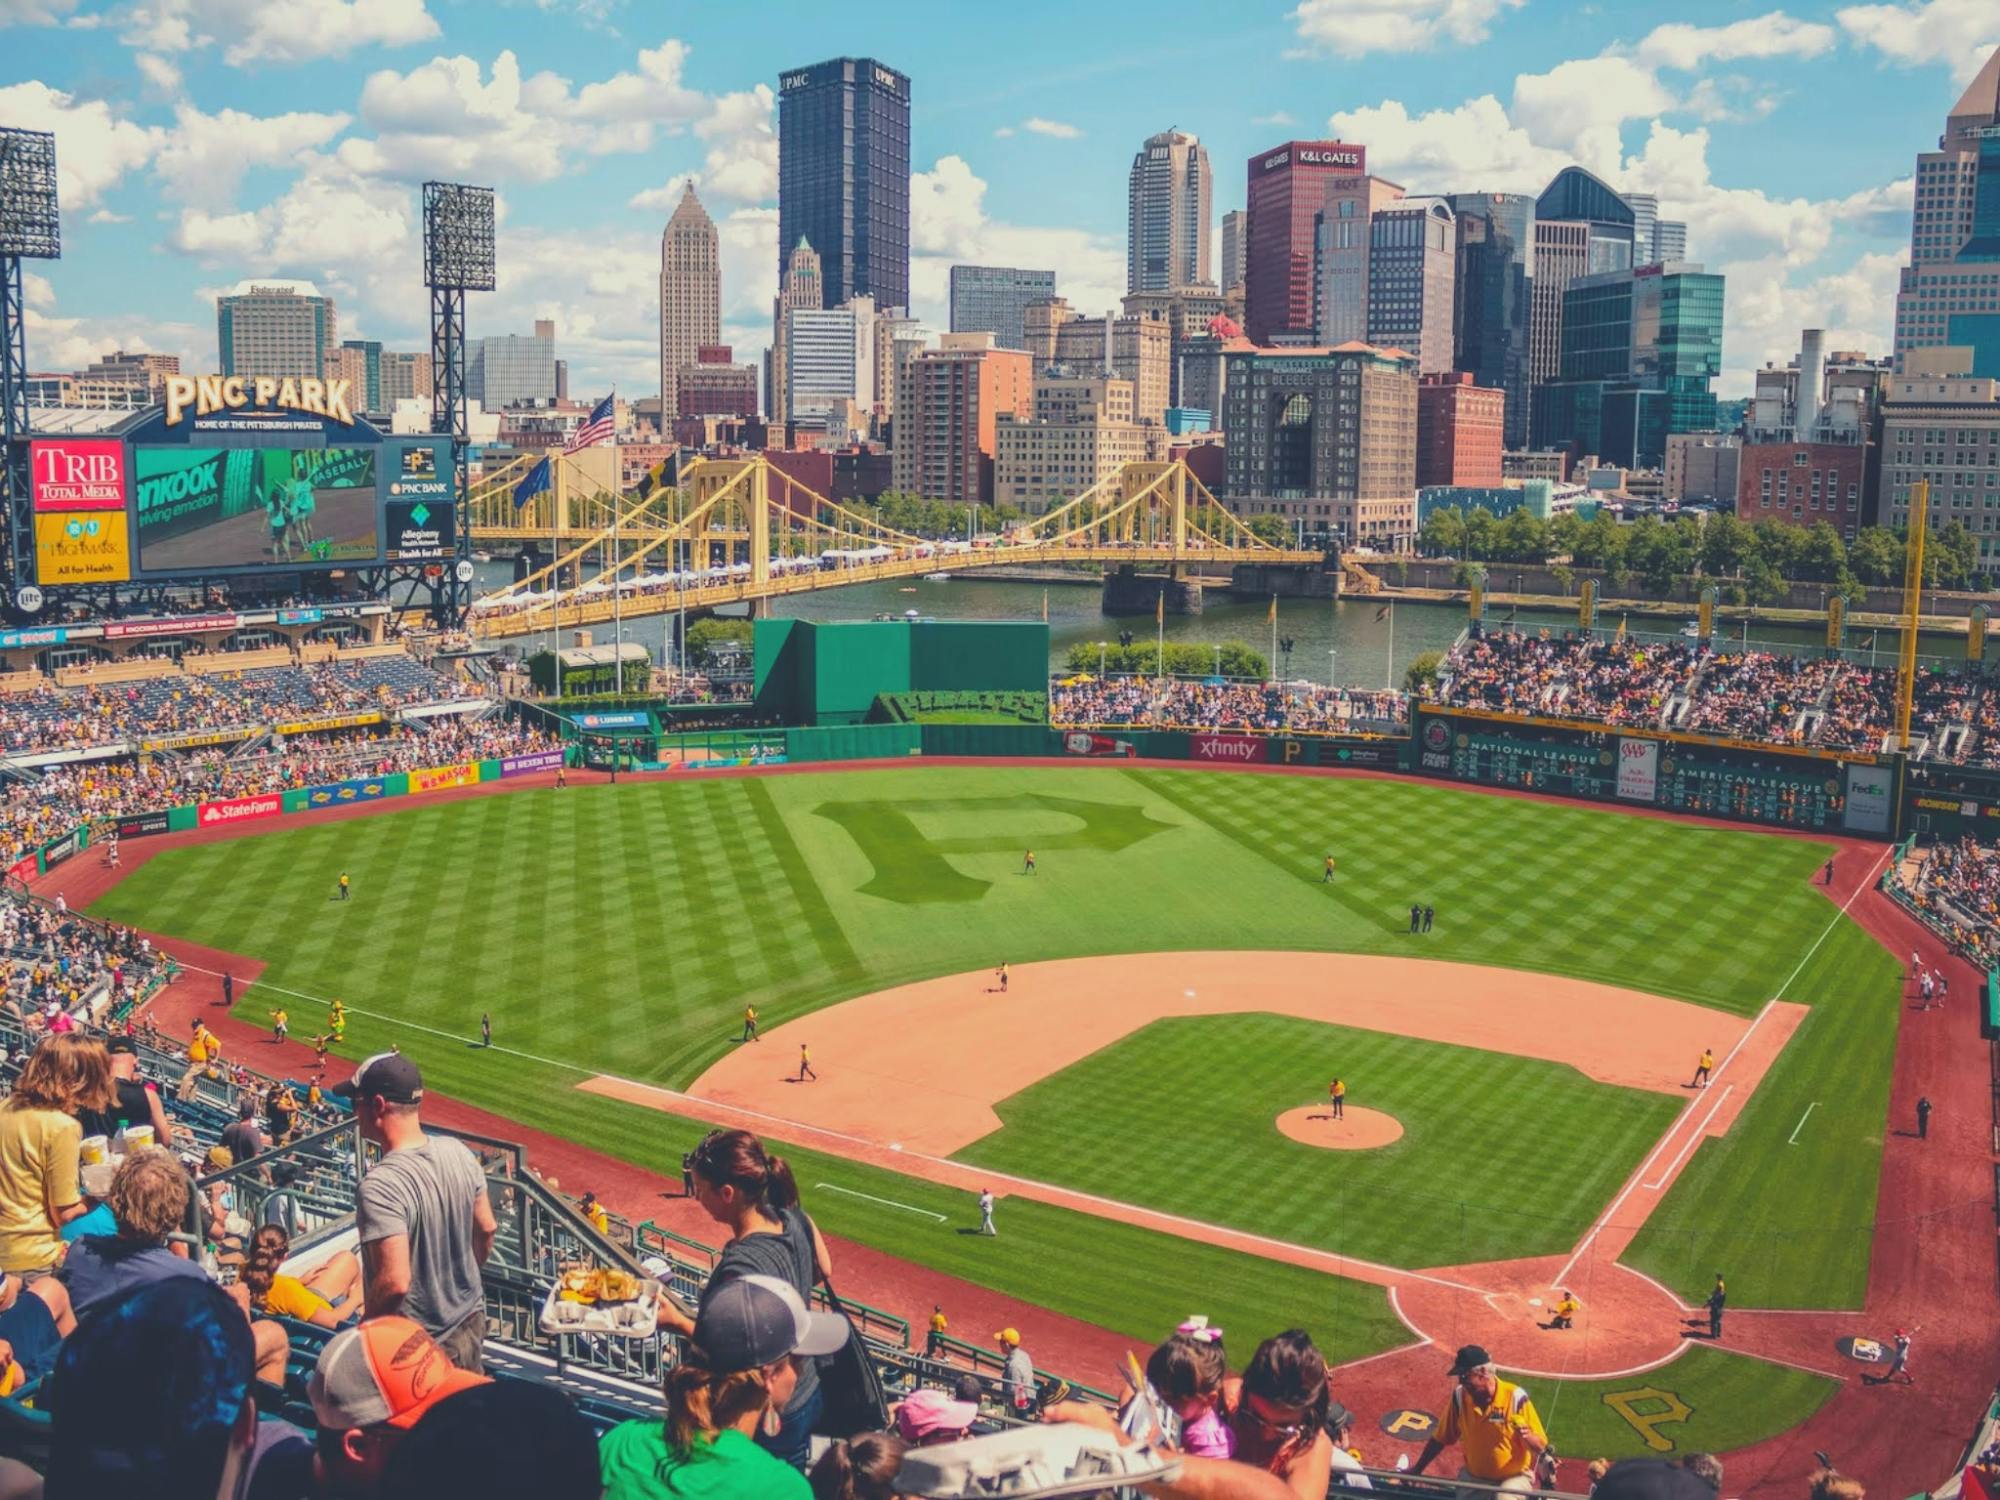 Biglietti per la partita di baseball dei Pittsburgh Pirates al PNC Park